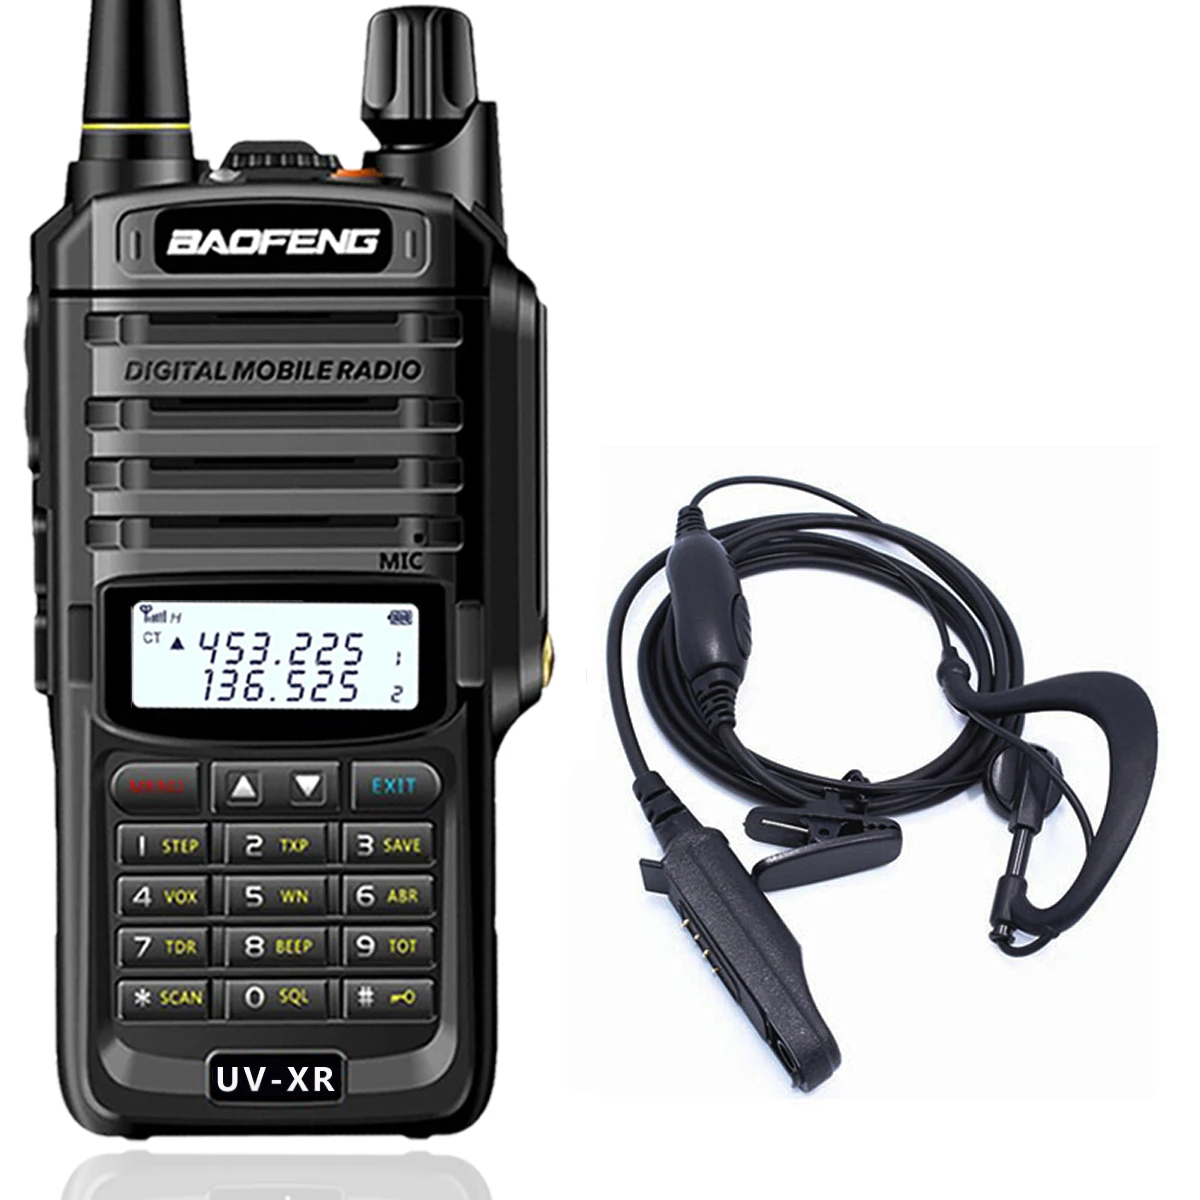 Baofeng UV-XR 10 Вт мощная рация CB радио набор портативный 10 км дальность двухстороннее радио uv-9r uv9r плюс - Цвет: add headset